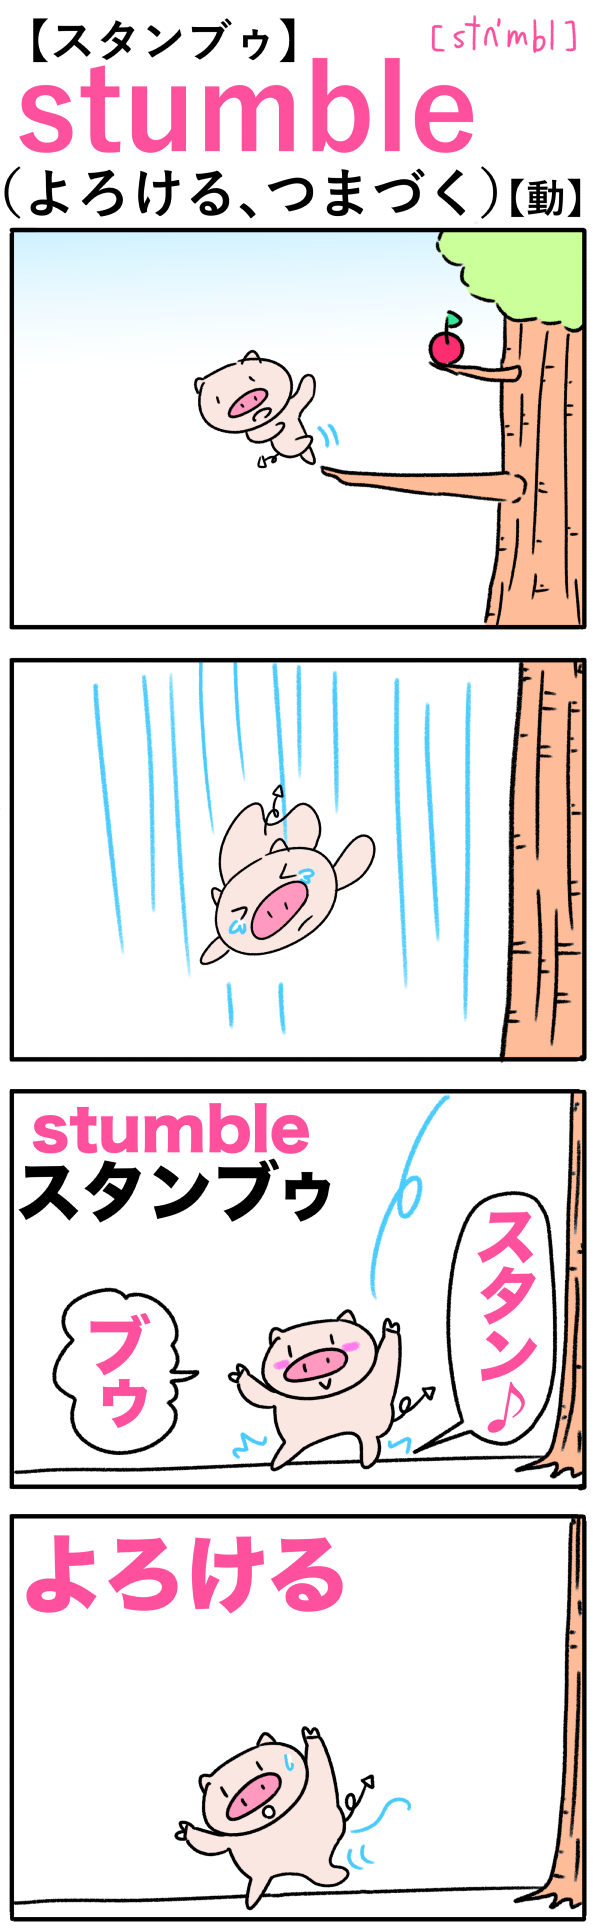 stumble（よろける）の語呂合わせ英単語